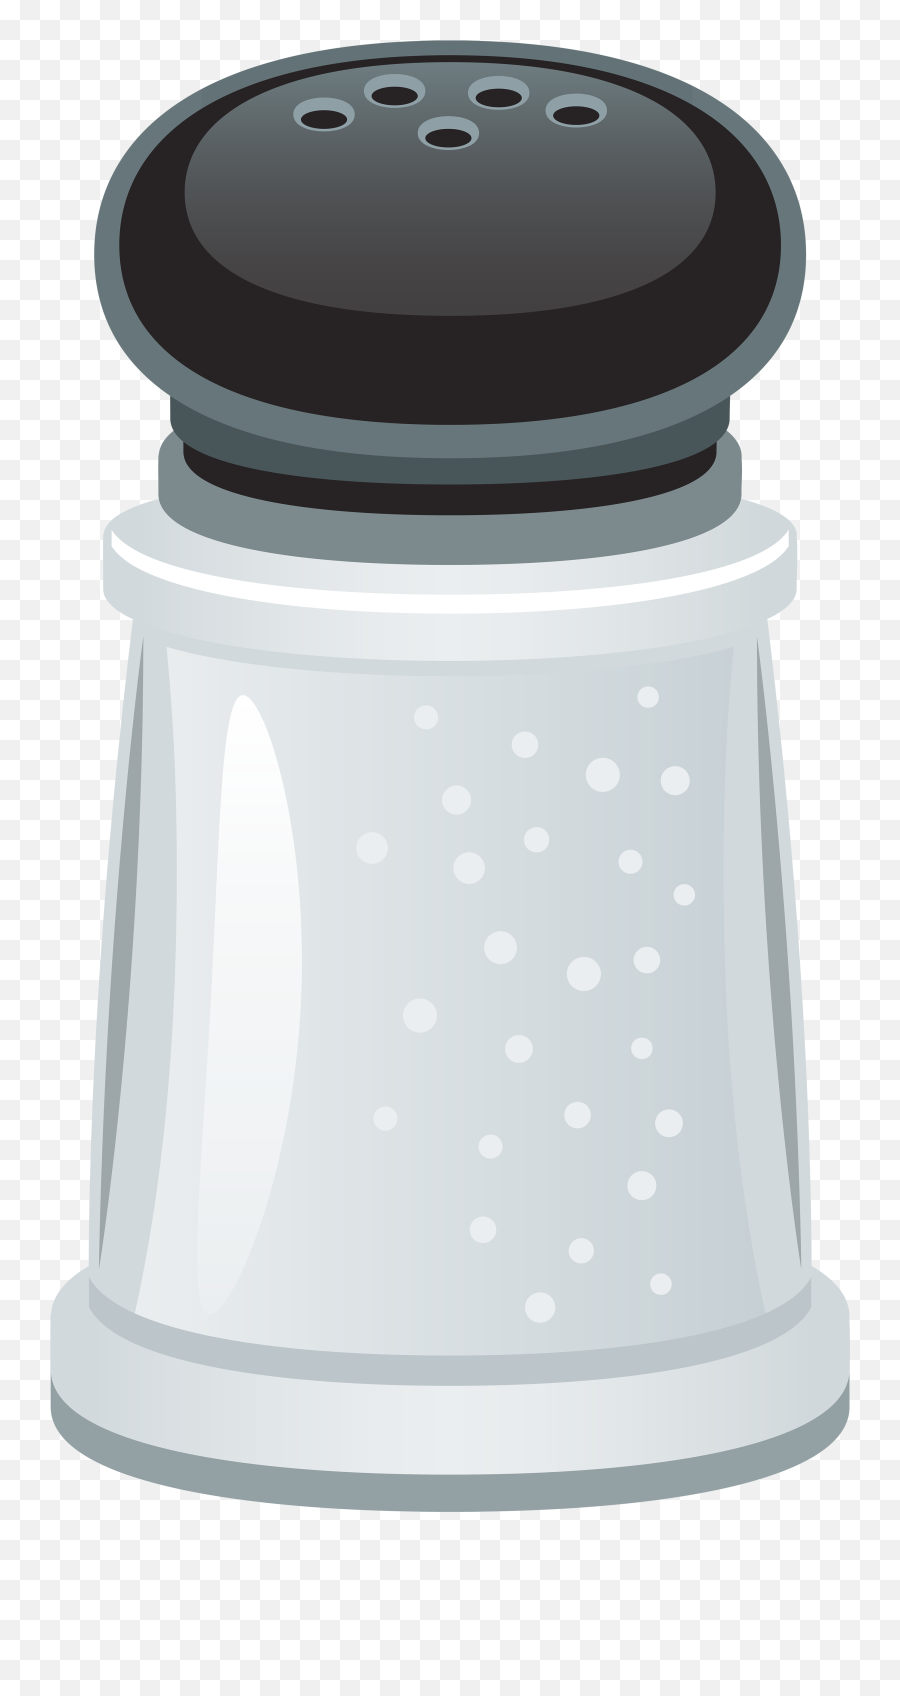 Salt Png Pic - Salt Shaker Transparent Background Clipart Emoji,Salt Clipart